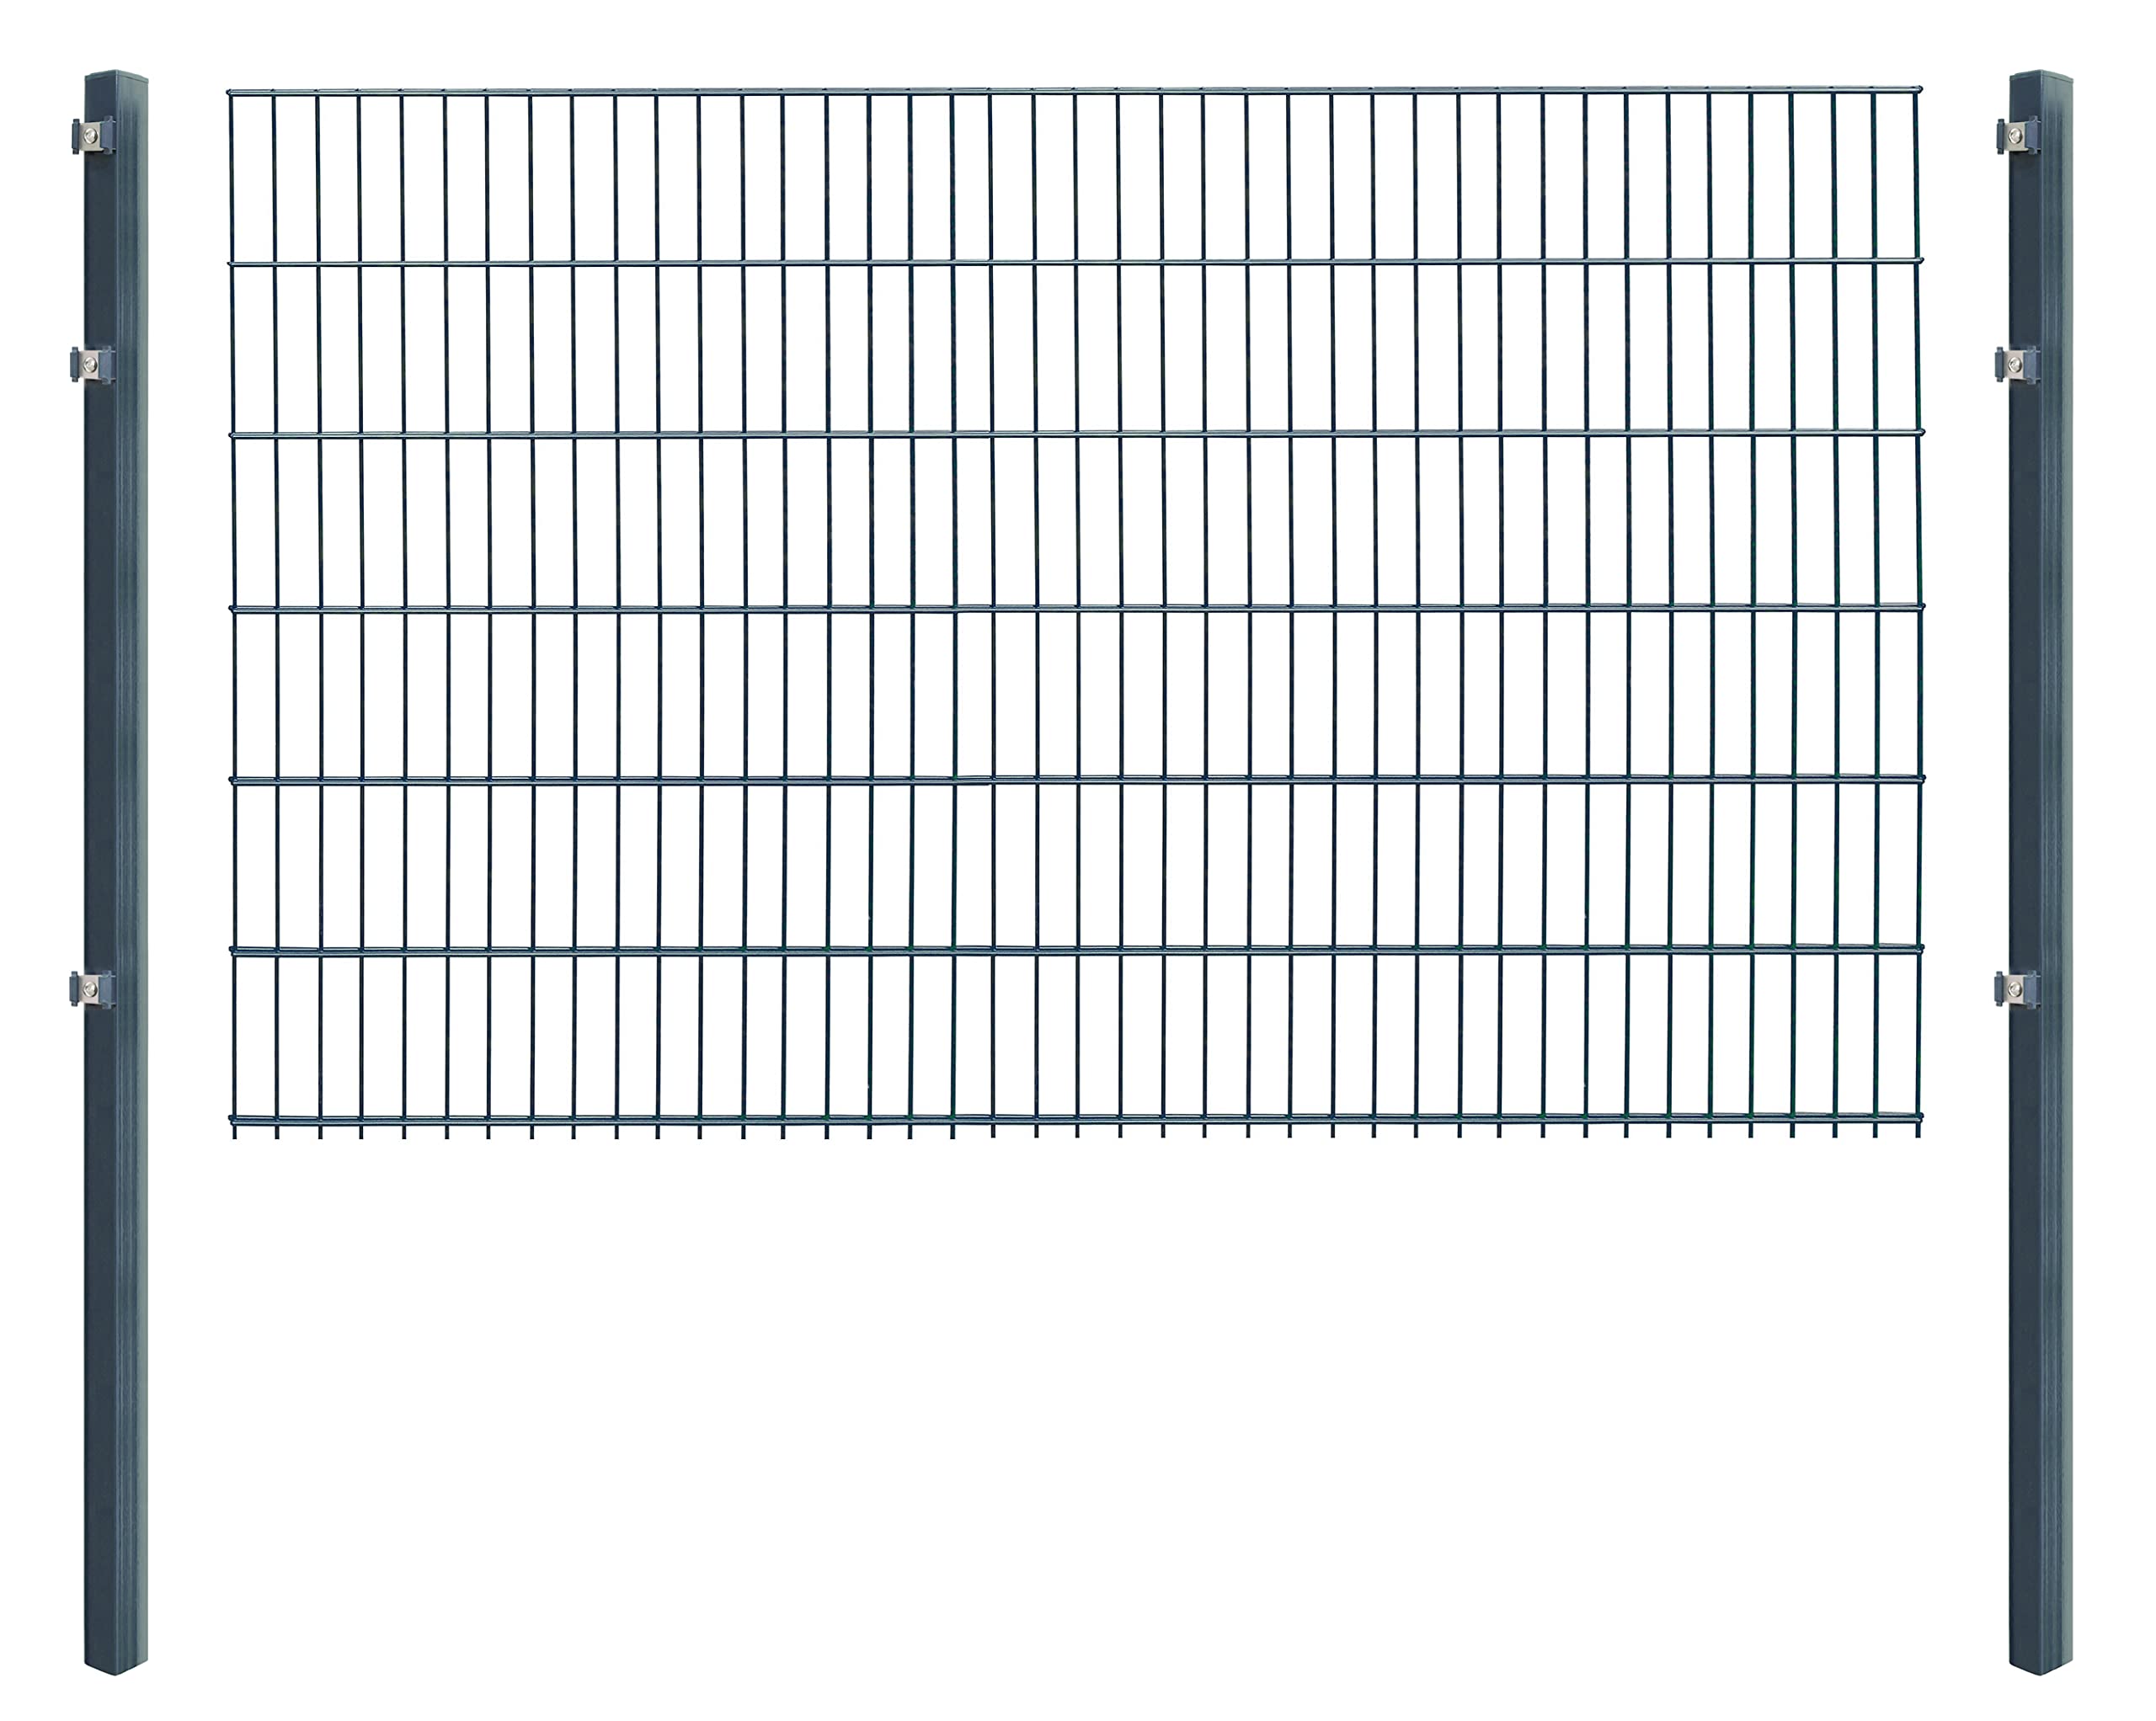 Doppelstabmattenzaun - Komplettset inkl. Pfosten (60x40mm) und Montagematerial - Verschiedene Längen und Höhen – Grün oder Anthrazit (L 6 m - H 123 cm, anthrazit)